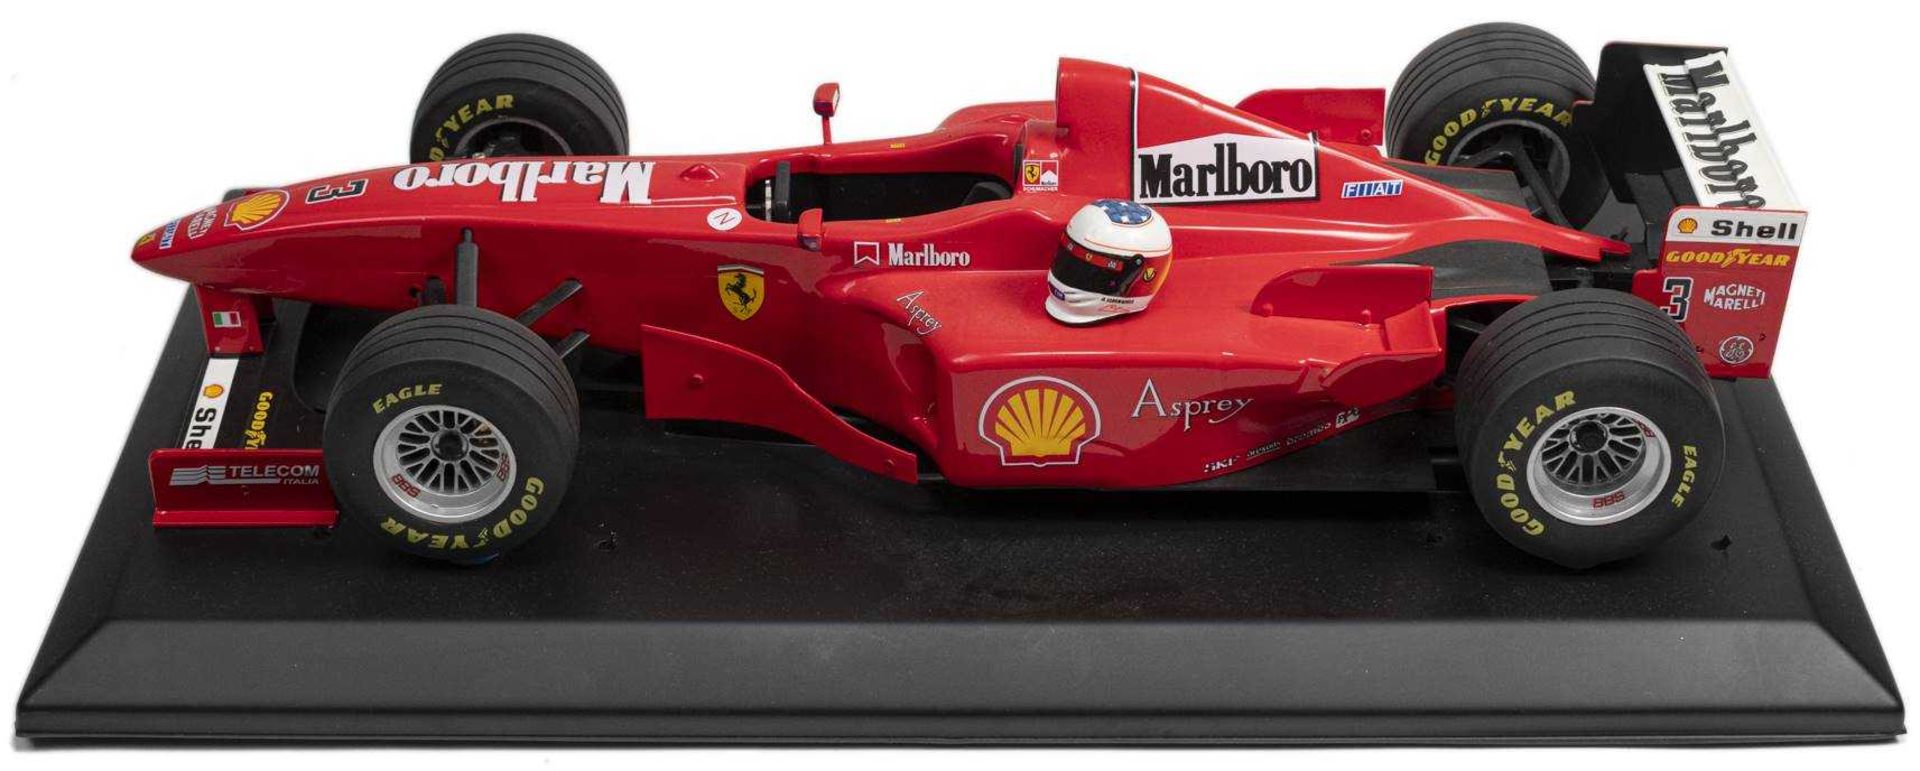 1998, FERRARI F 300 in the measuring stick 1: 8, driver Michael Schumacher, liftoff no. 3, limited e